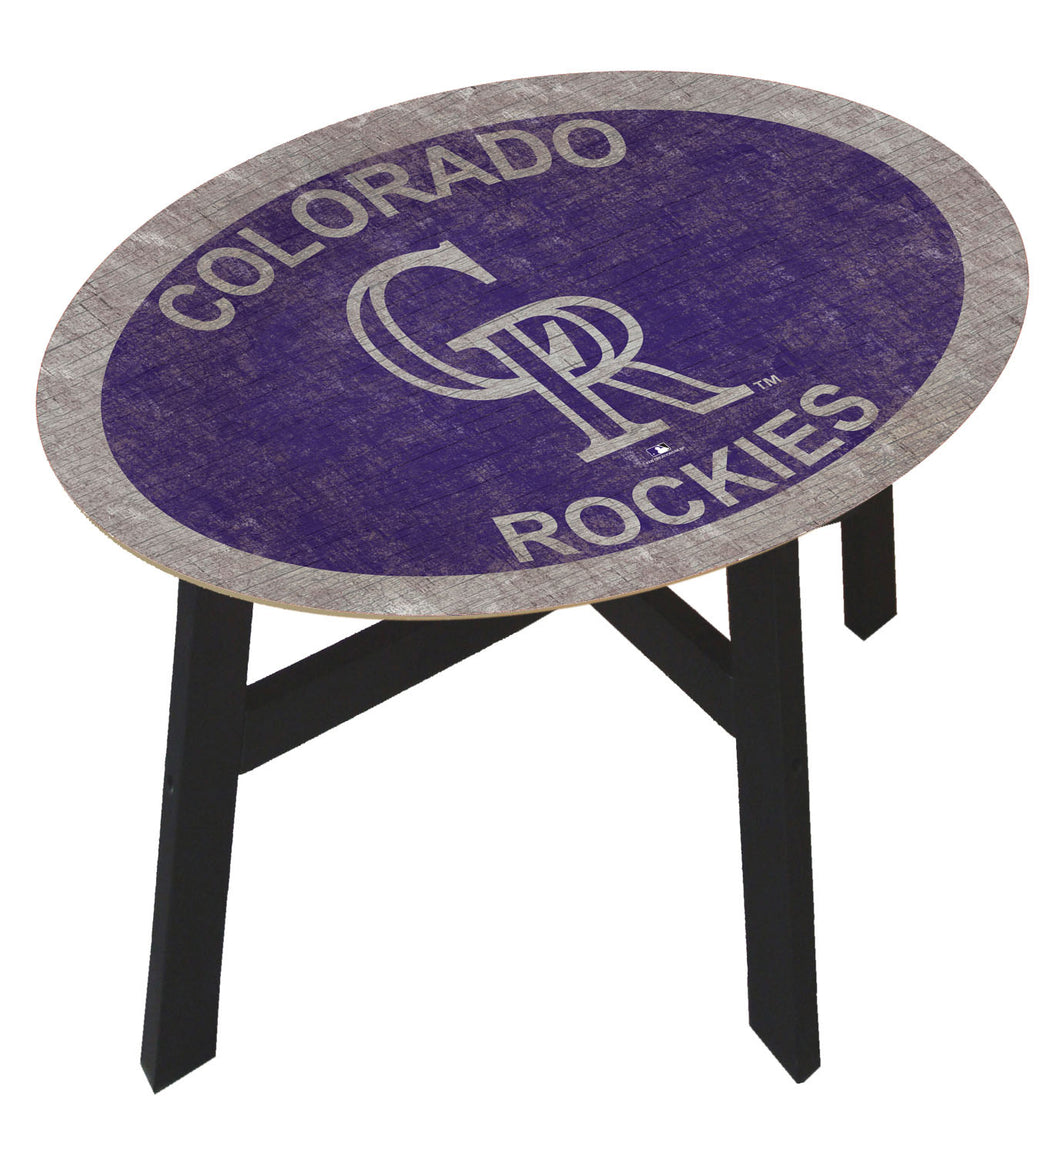 Colorado Rockies Team Color Wood Side Table